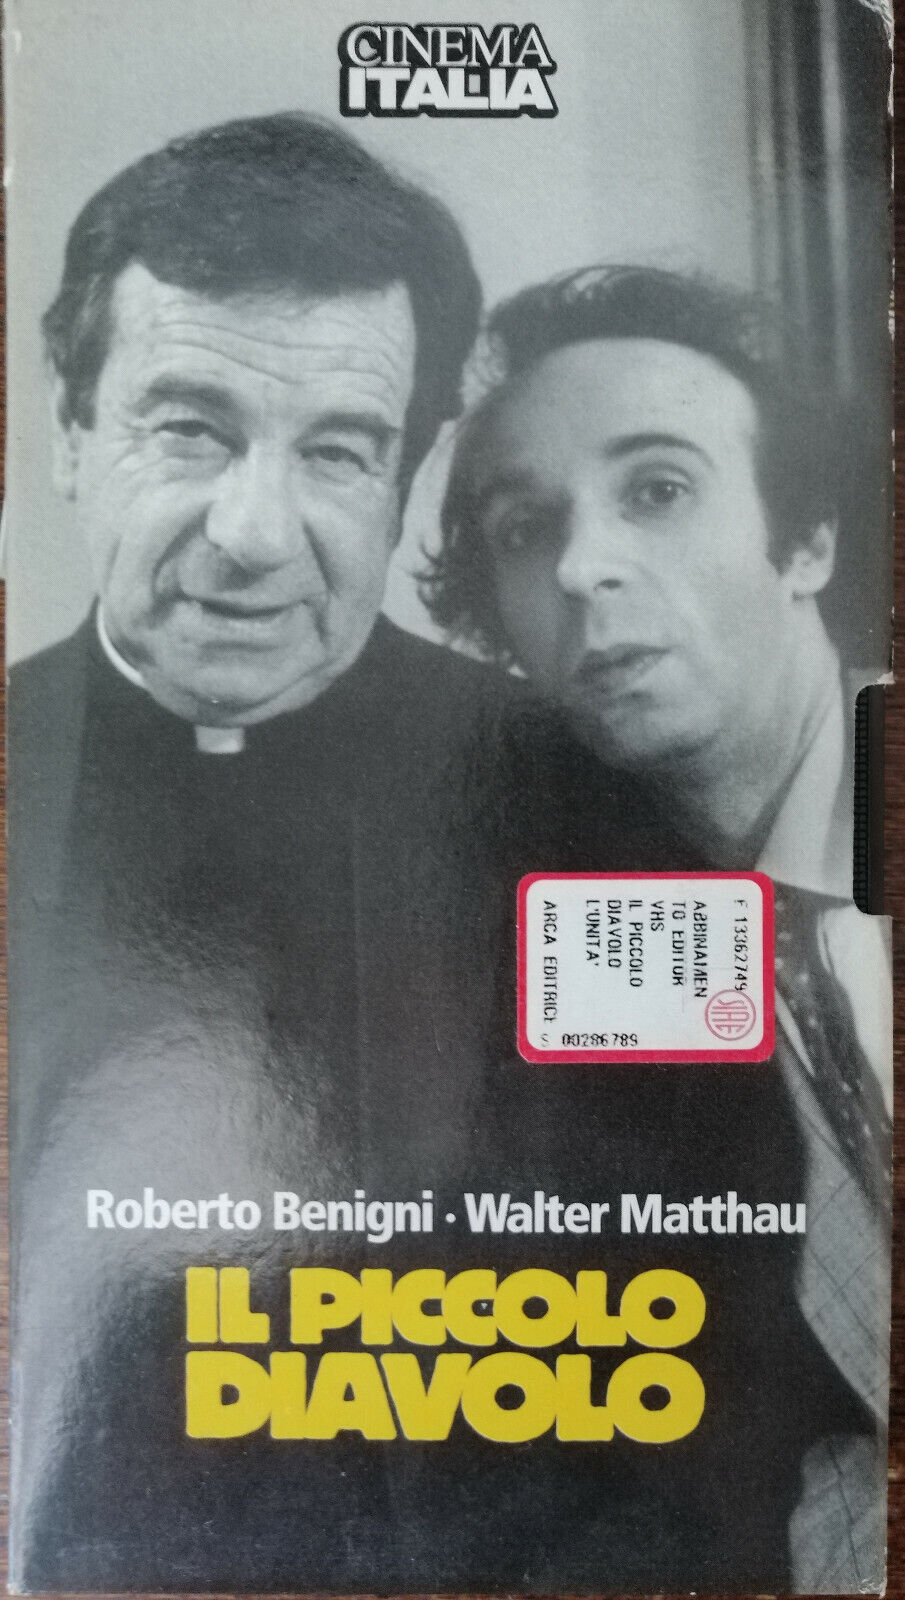 Il piccolo diavolo - Benigni, Matthau - 1988 - VHS -A